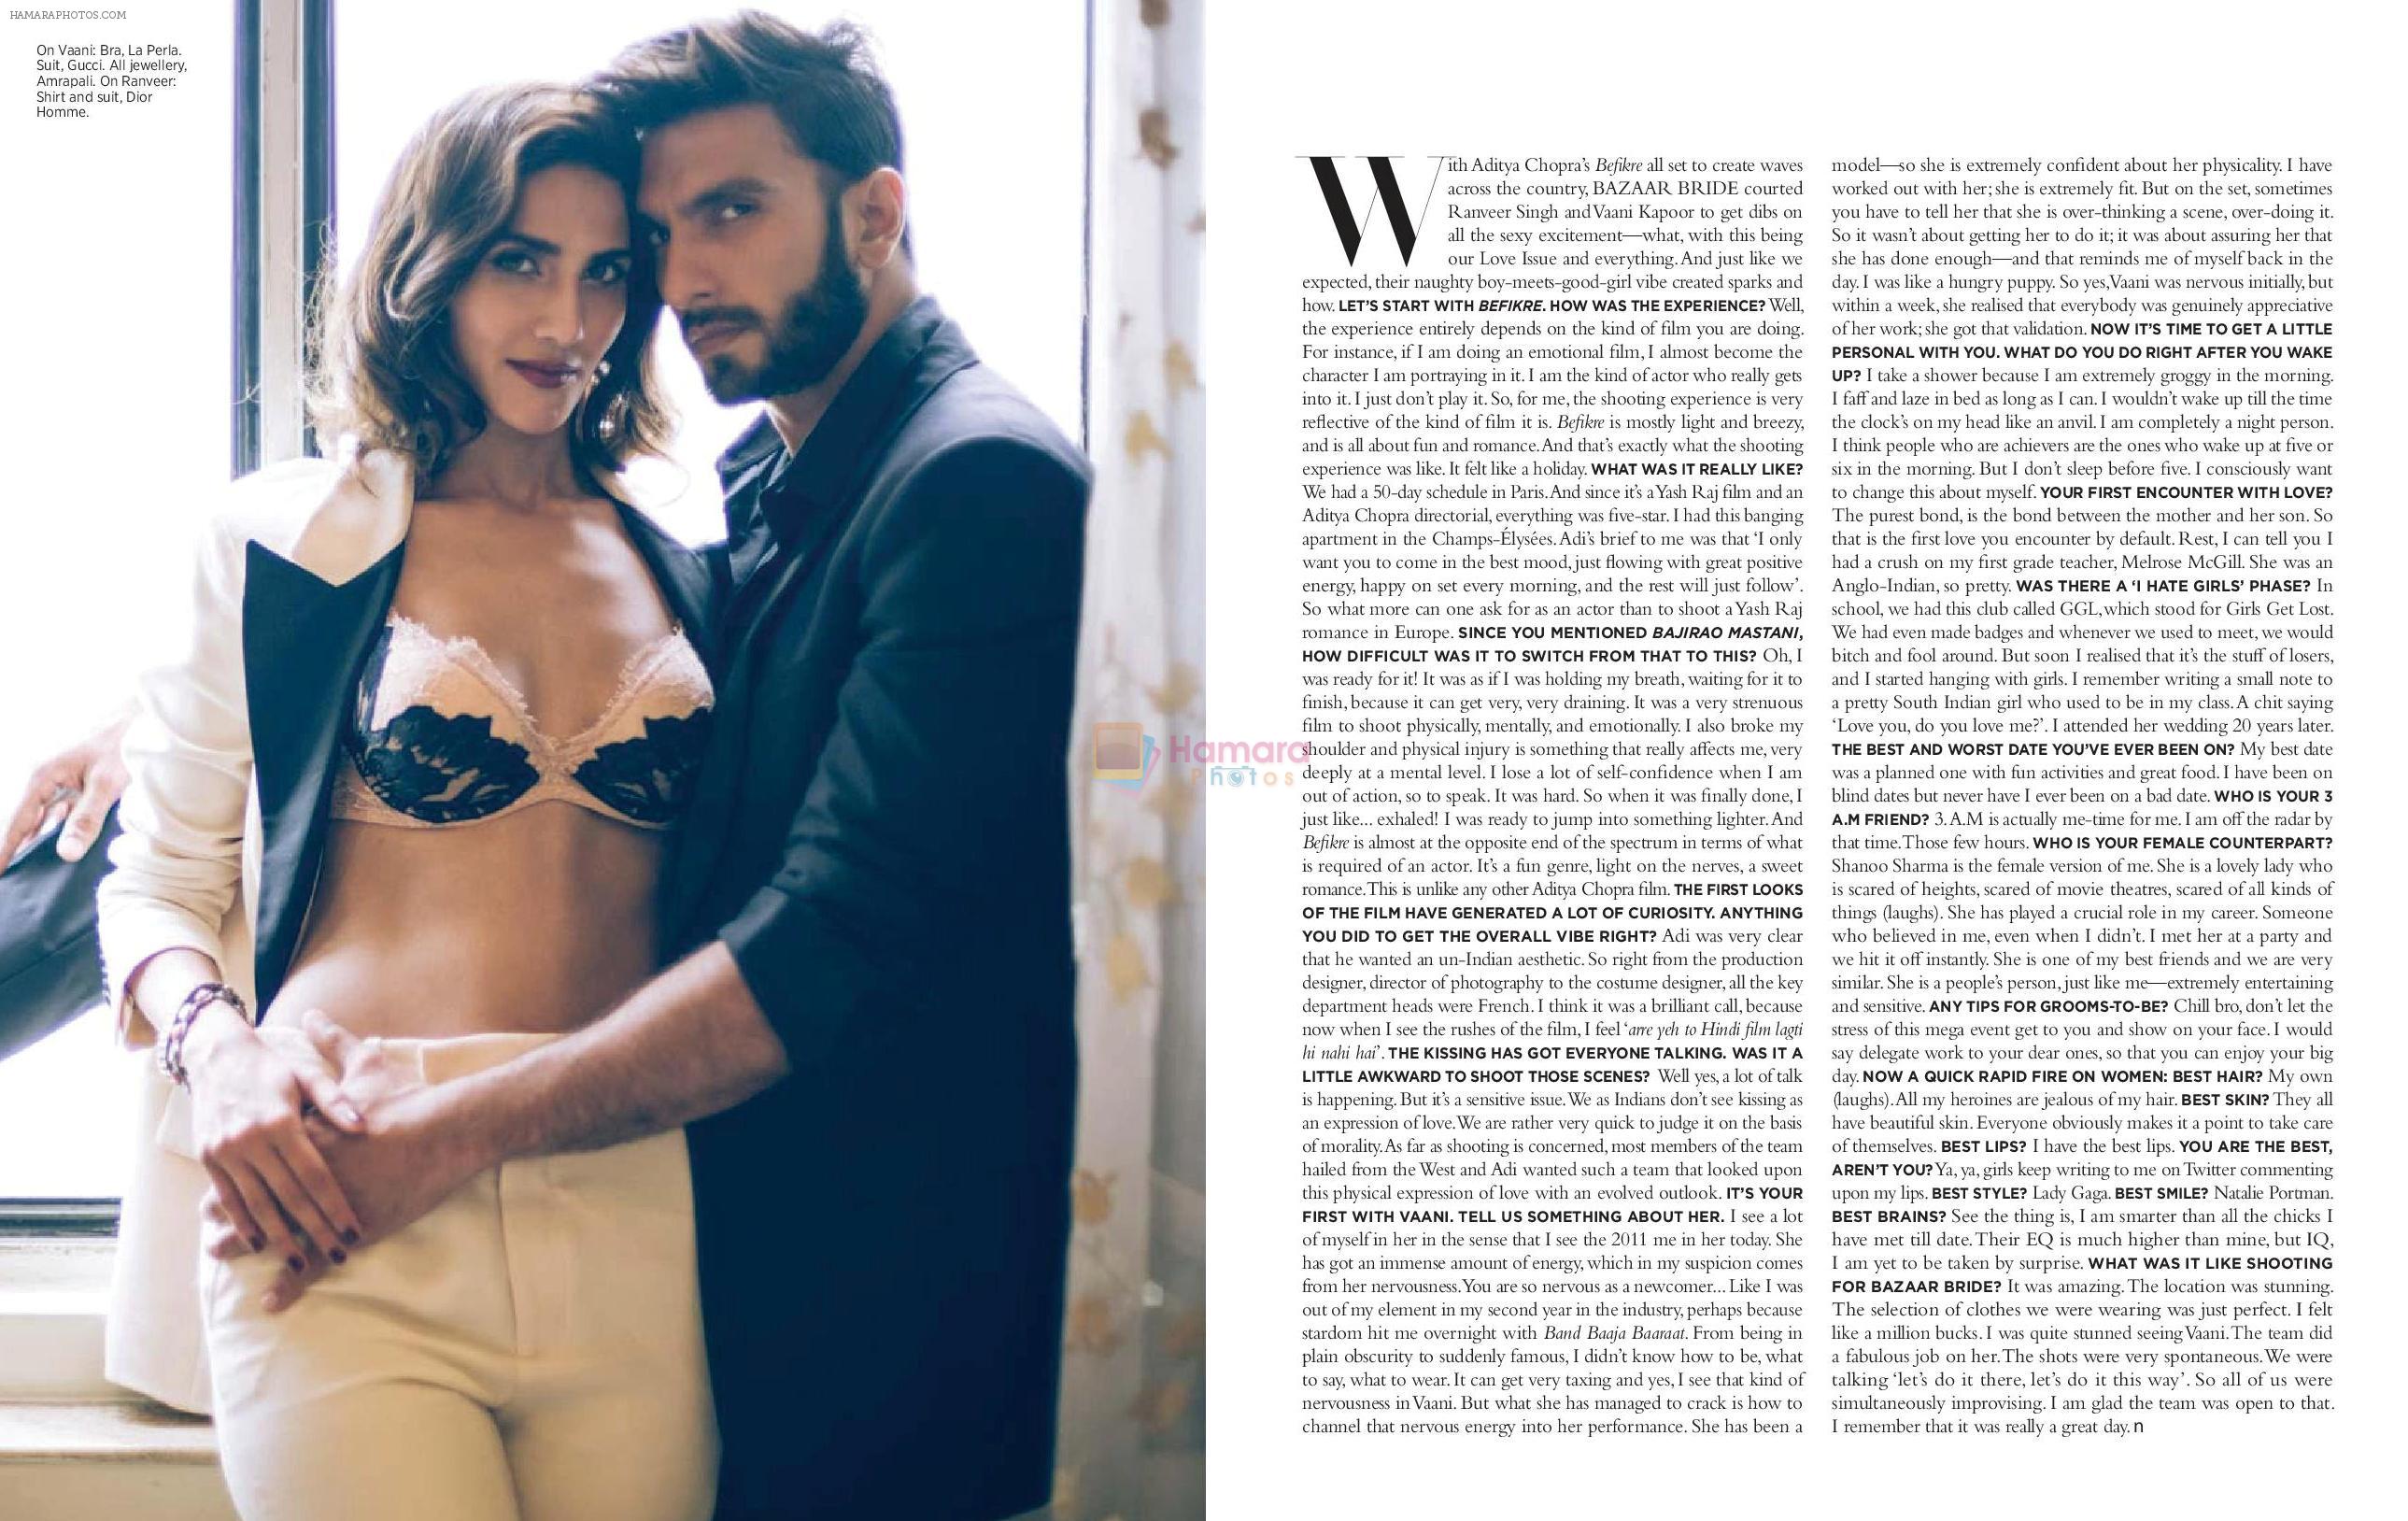 Ranveer Singh and Vaani Kapoor on the cover of Harper's Bazaar Bride, Oct. issue